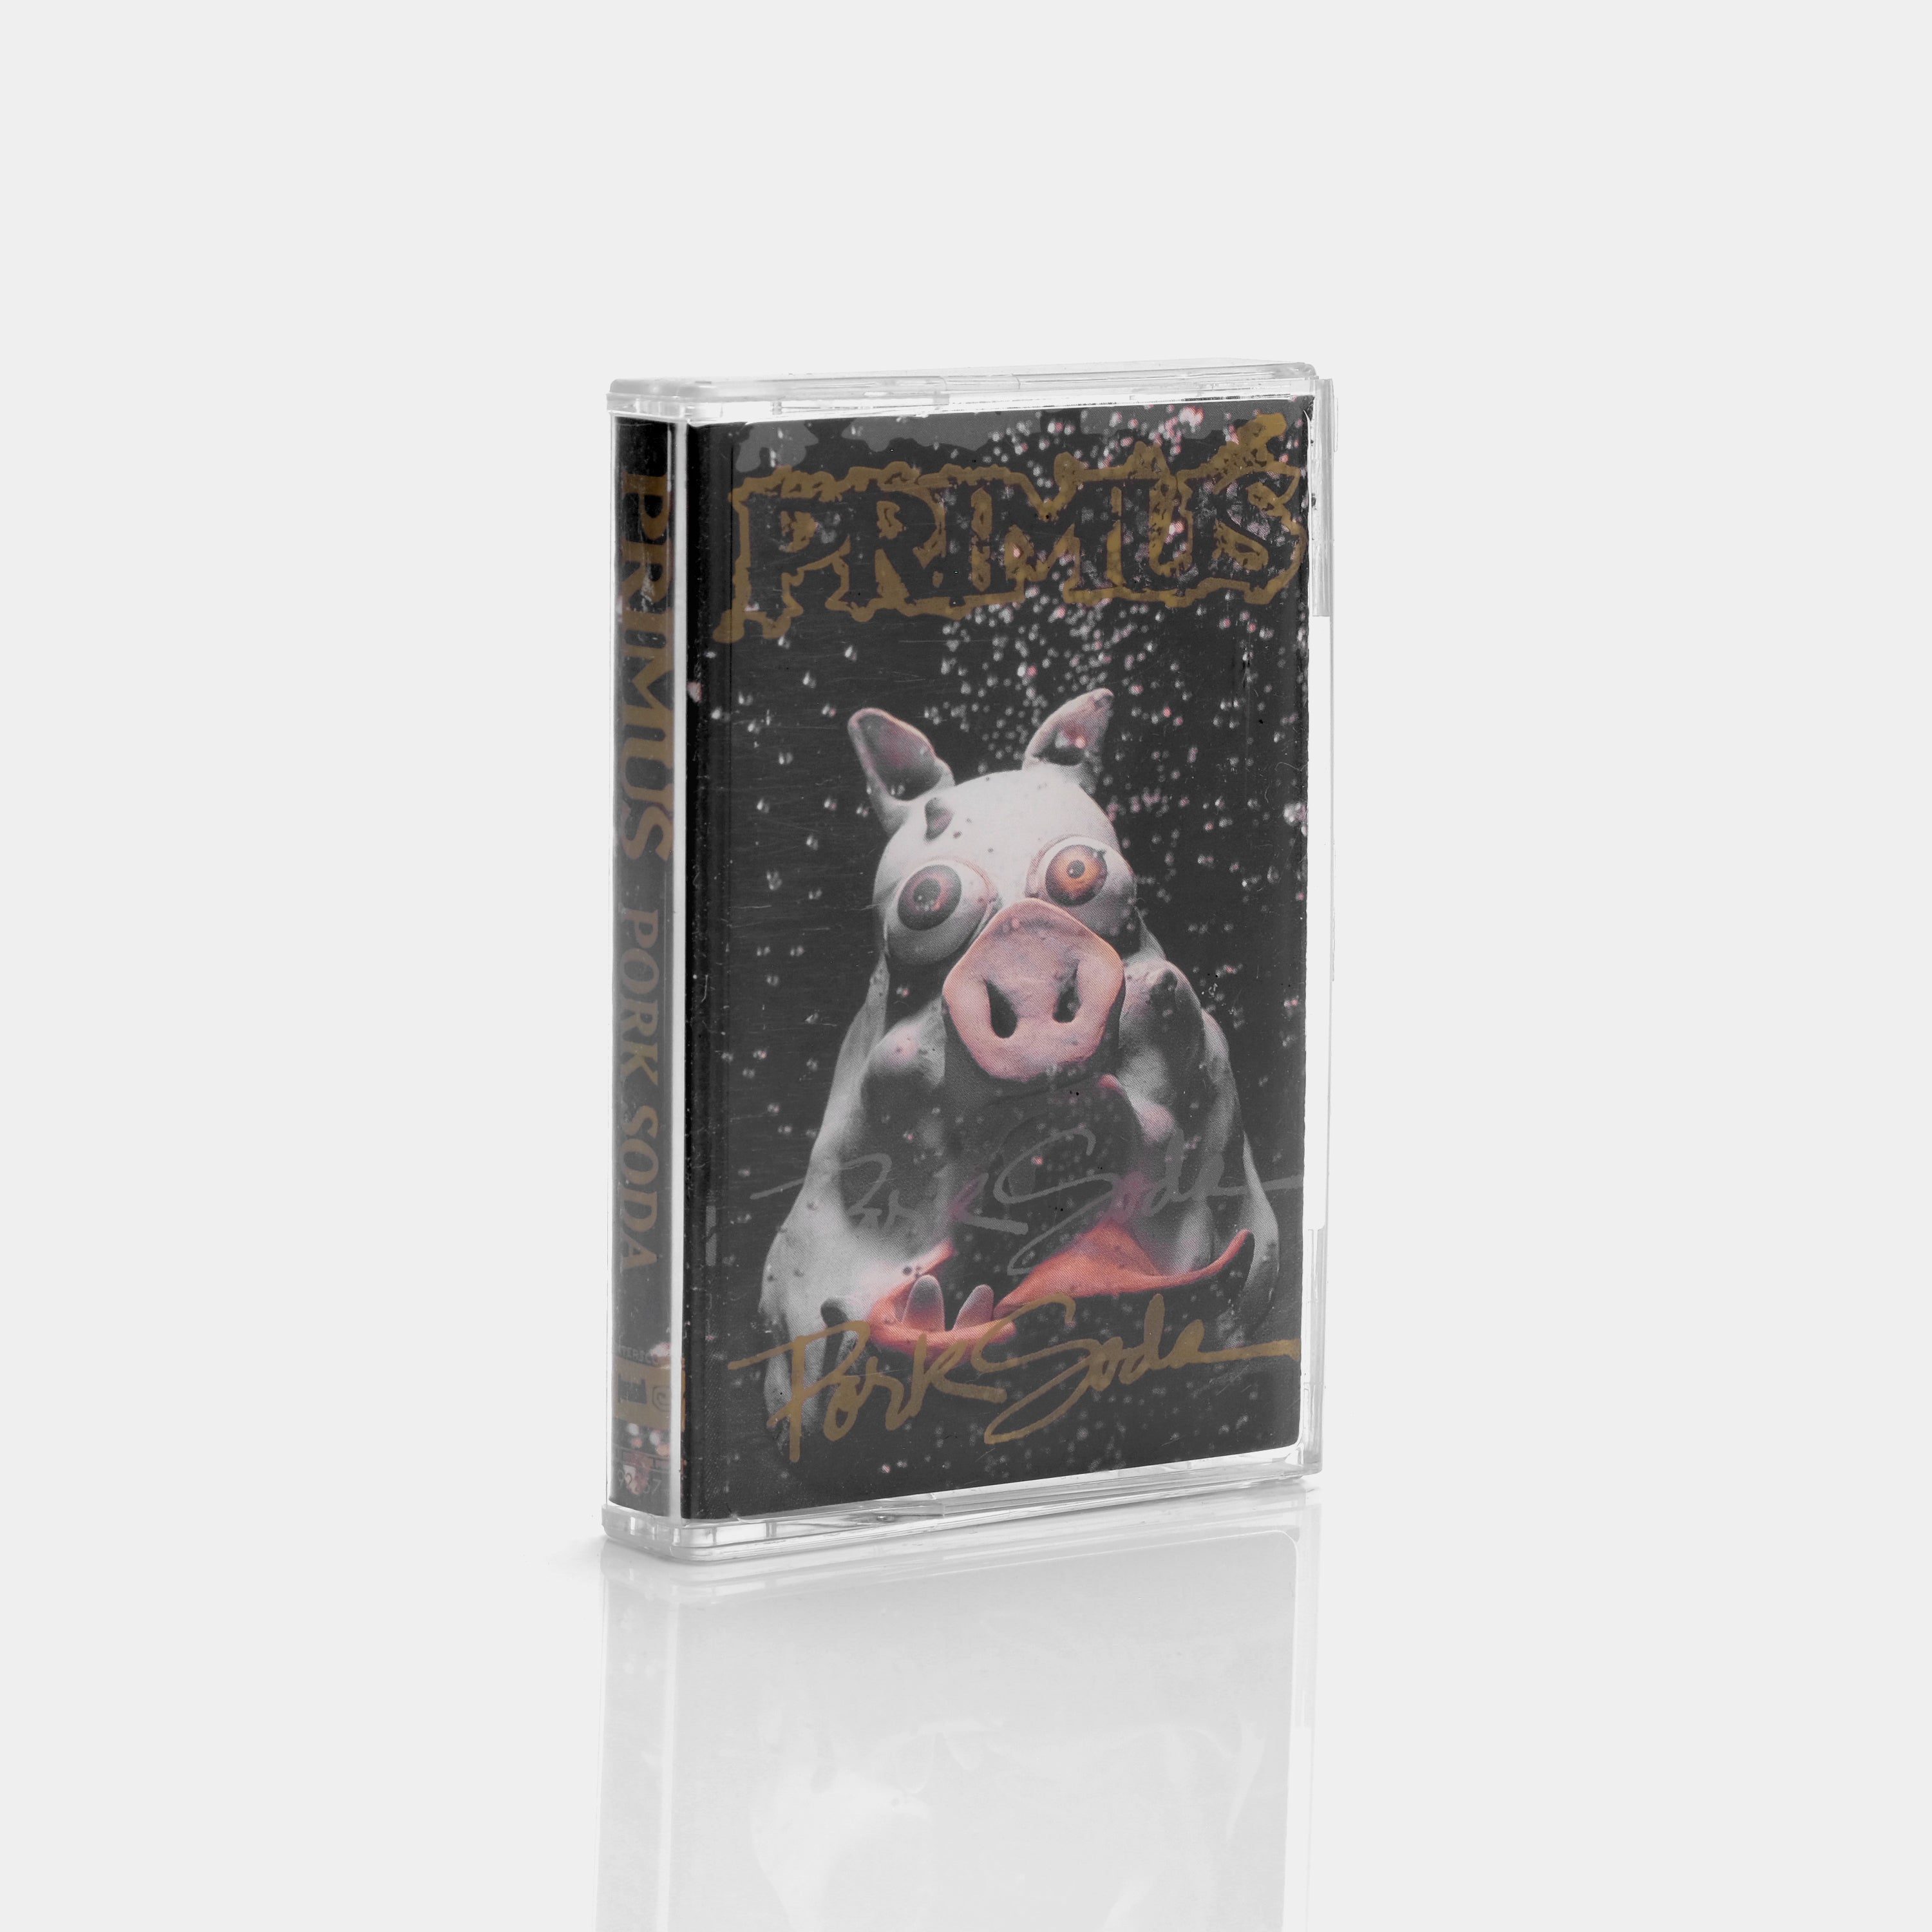 Primus - Pork Soda Cassette Tape